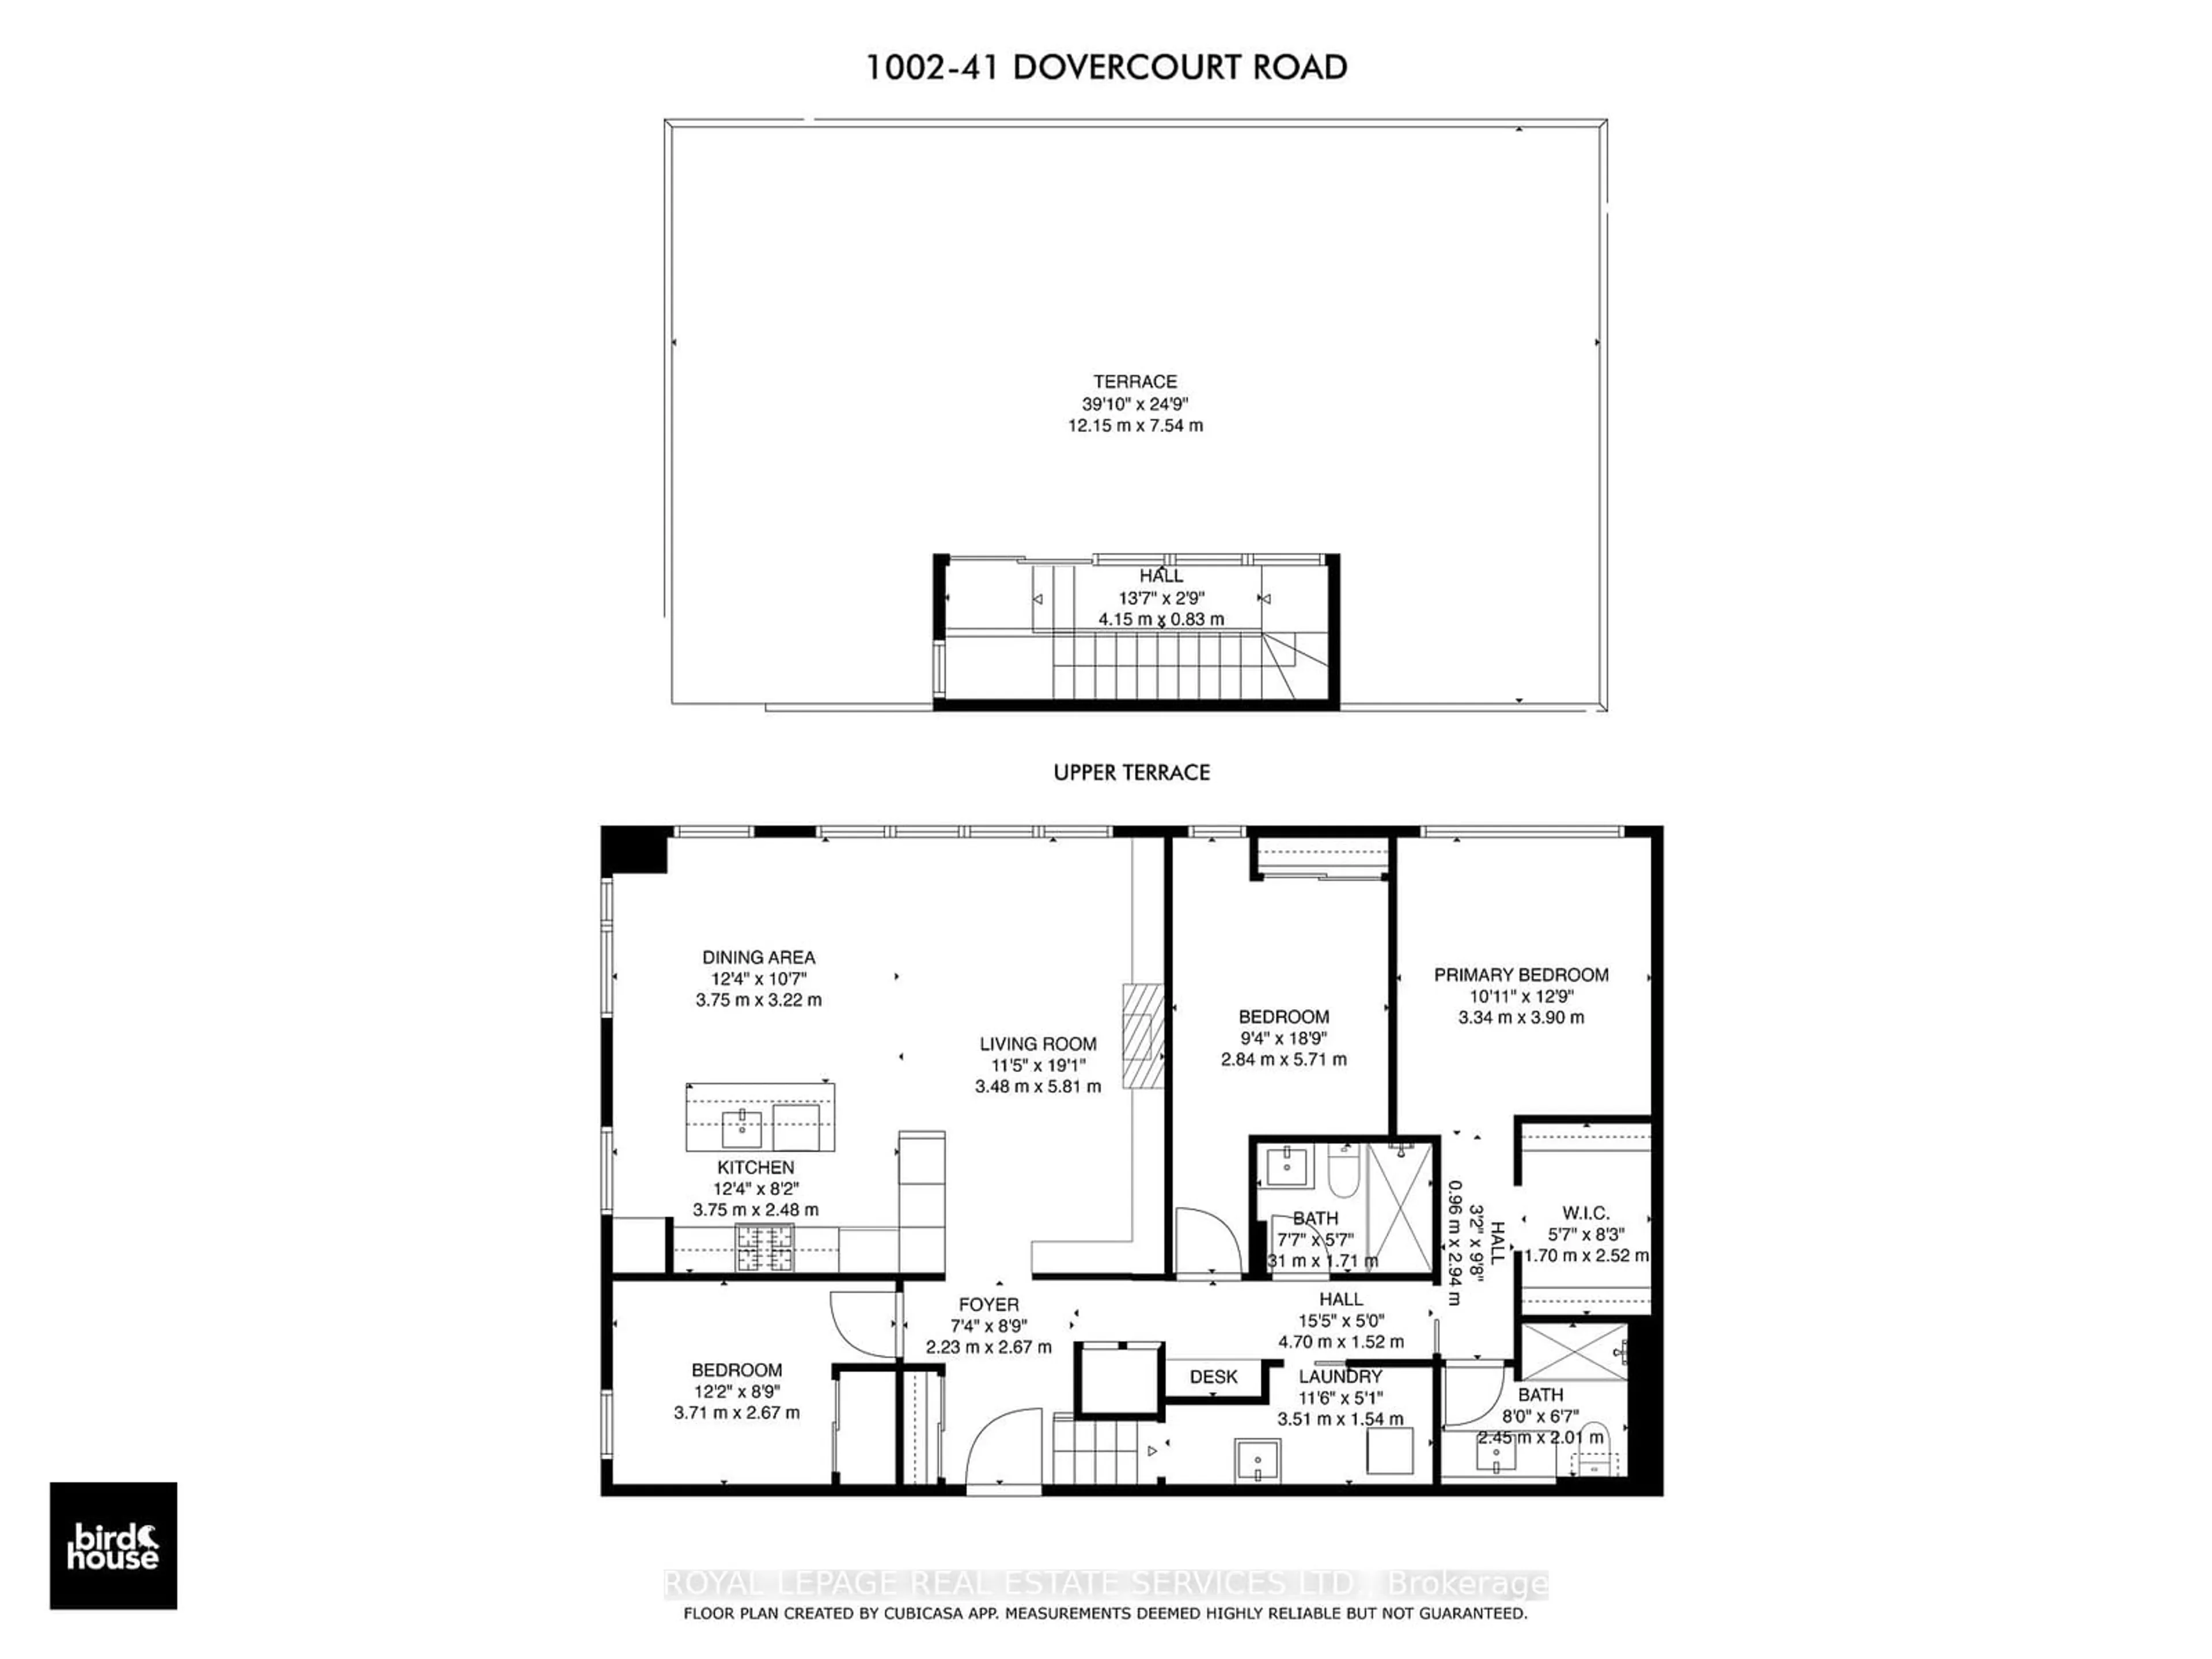 Floor plan for 41 Dovercourt Rd #1002, Toronto Ontario M6J 0G6